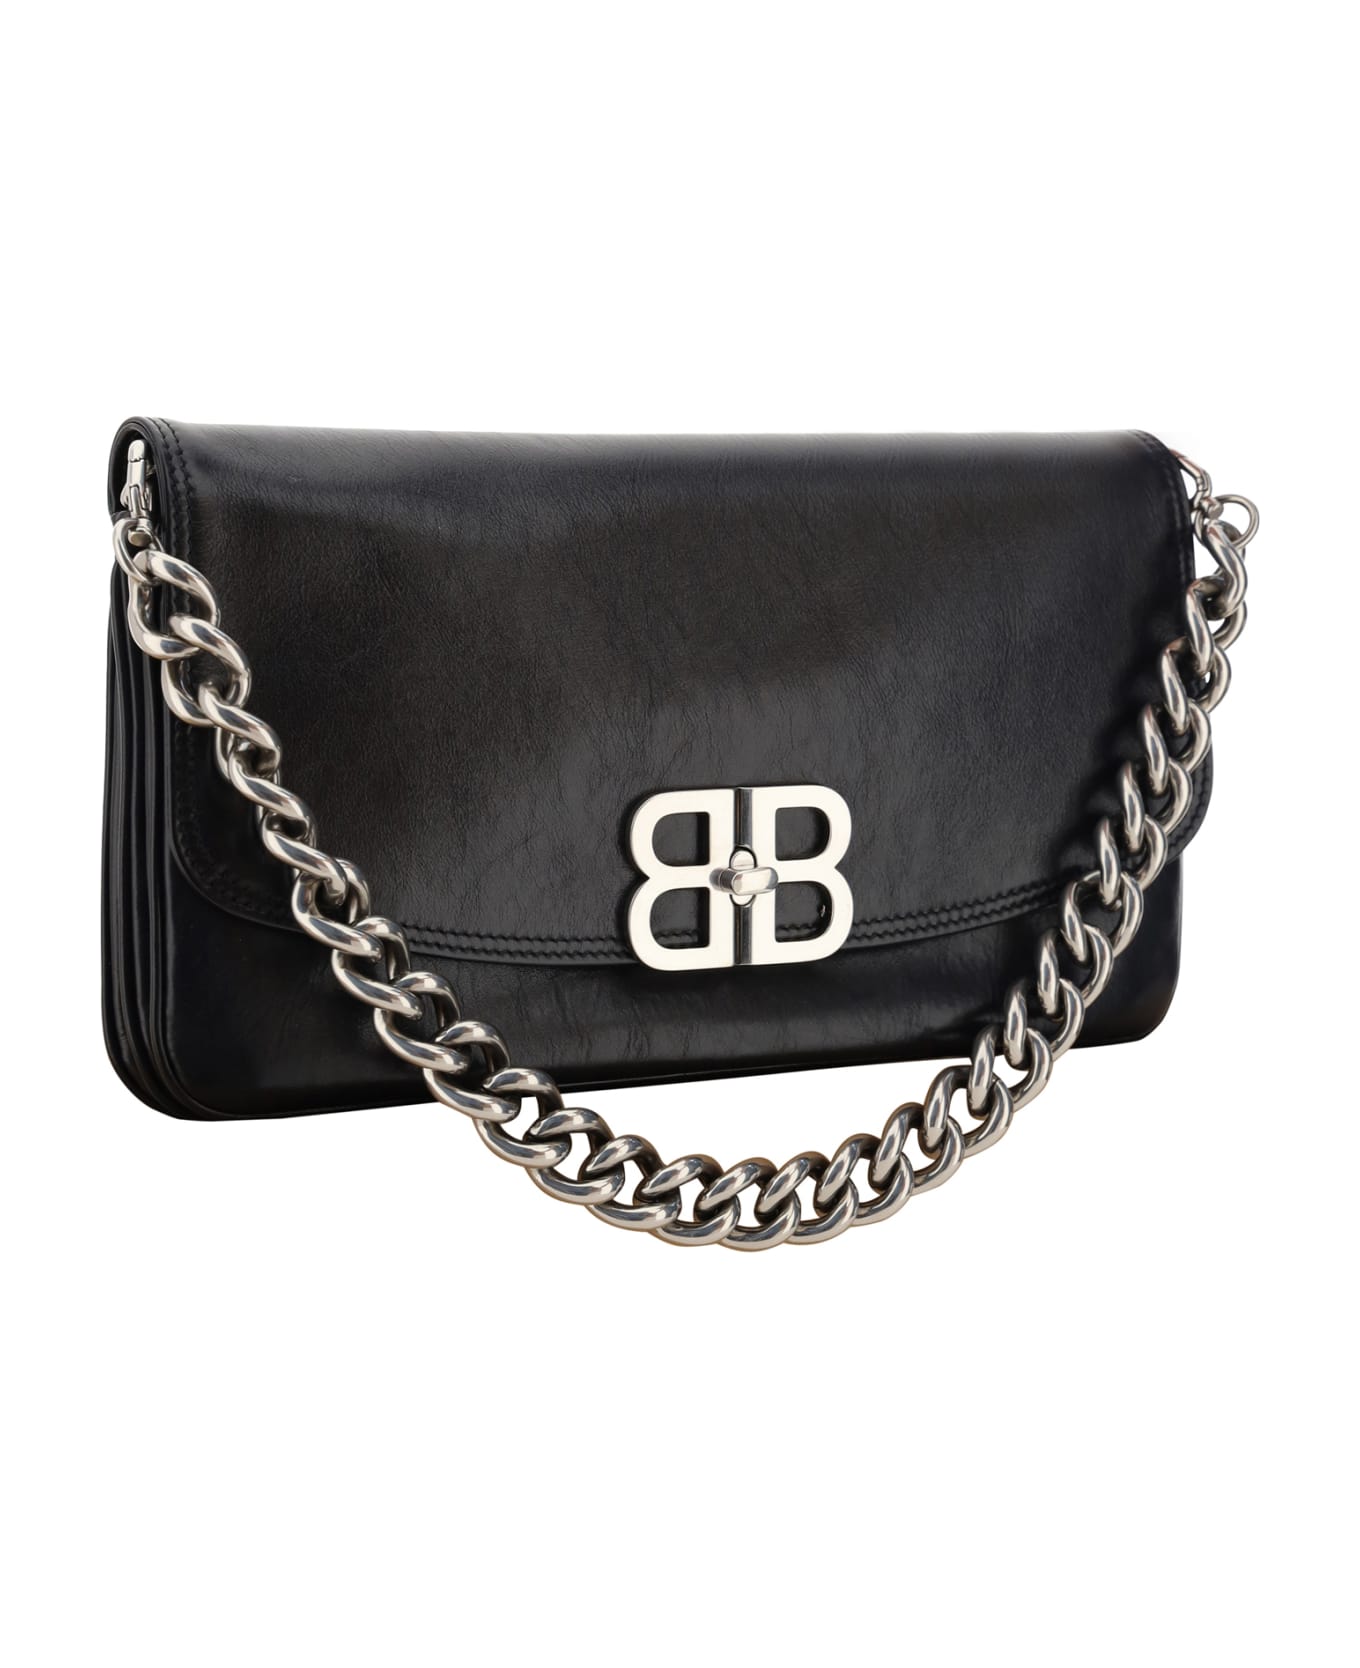 Balenciaga Bb Soft Large Flap Bag - Black ショルダーバッグ